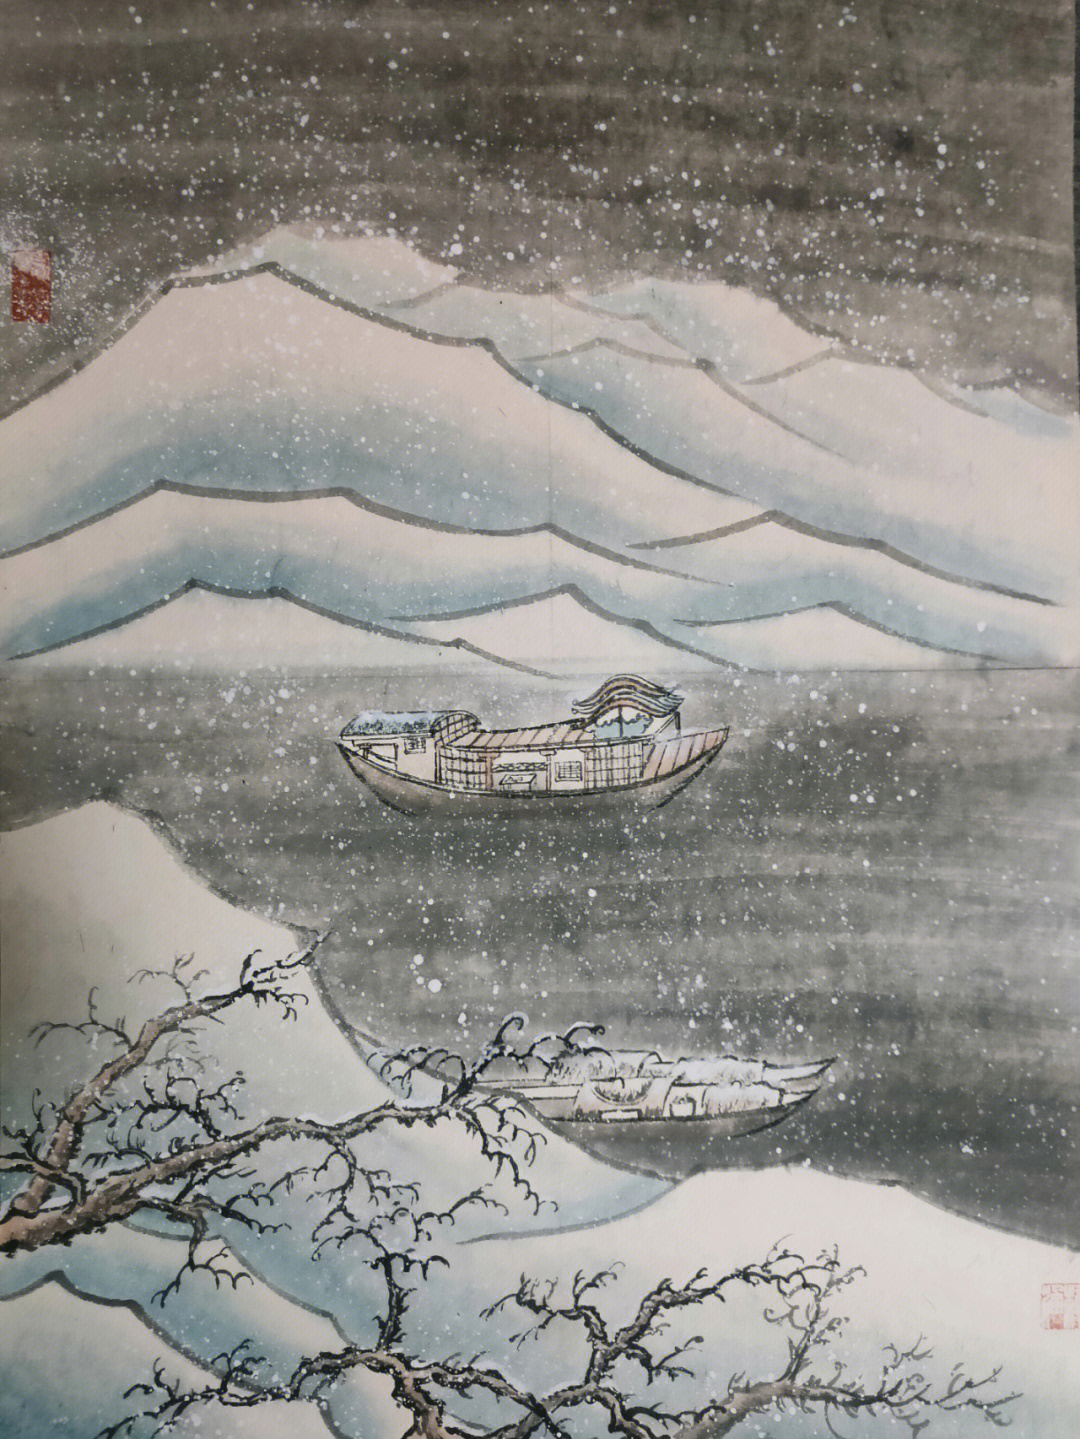 小学生雪景画山水图片